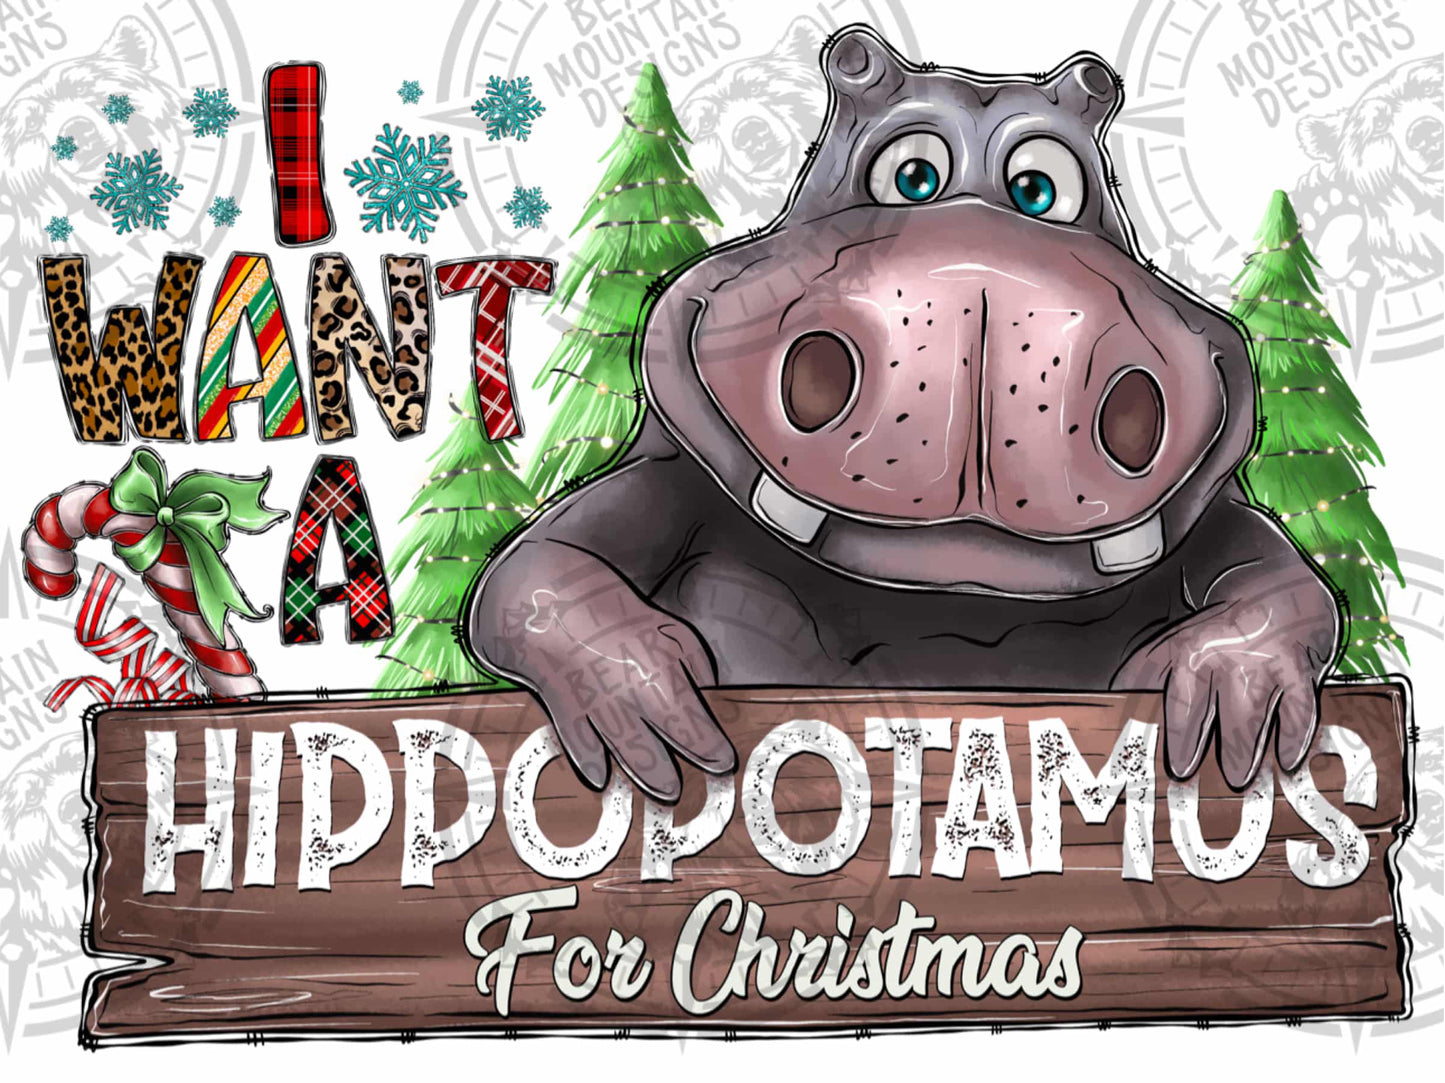 I Want A Hippopotamus For Chrstmas